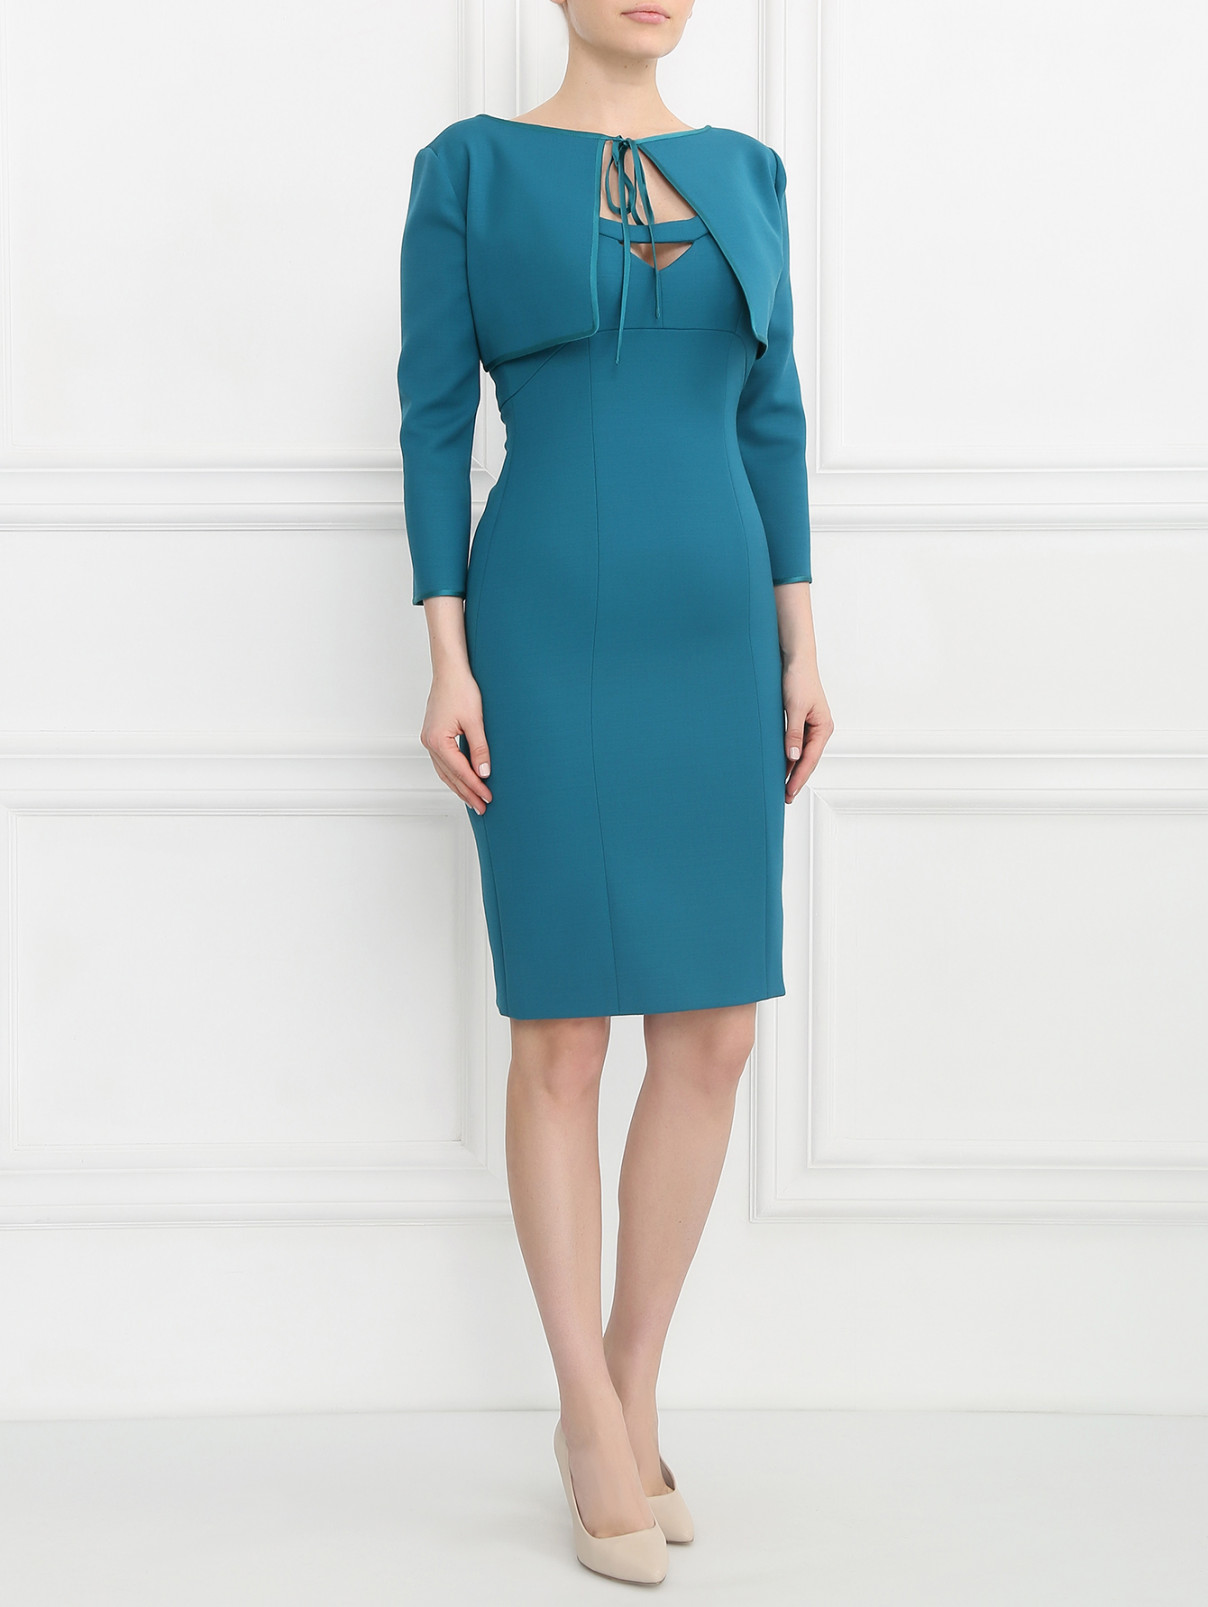 Платье из шерсти с накидкой Alberta Ferretti  –  Модель Общий вид  – Цвет:  Зеленый